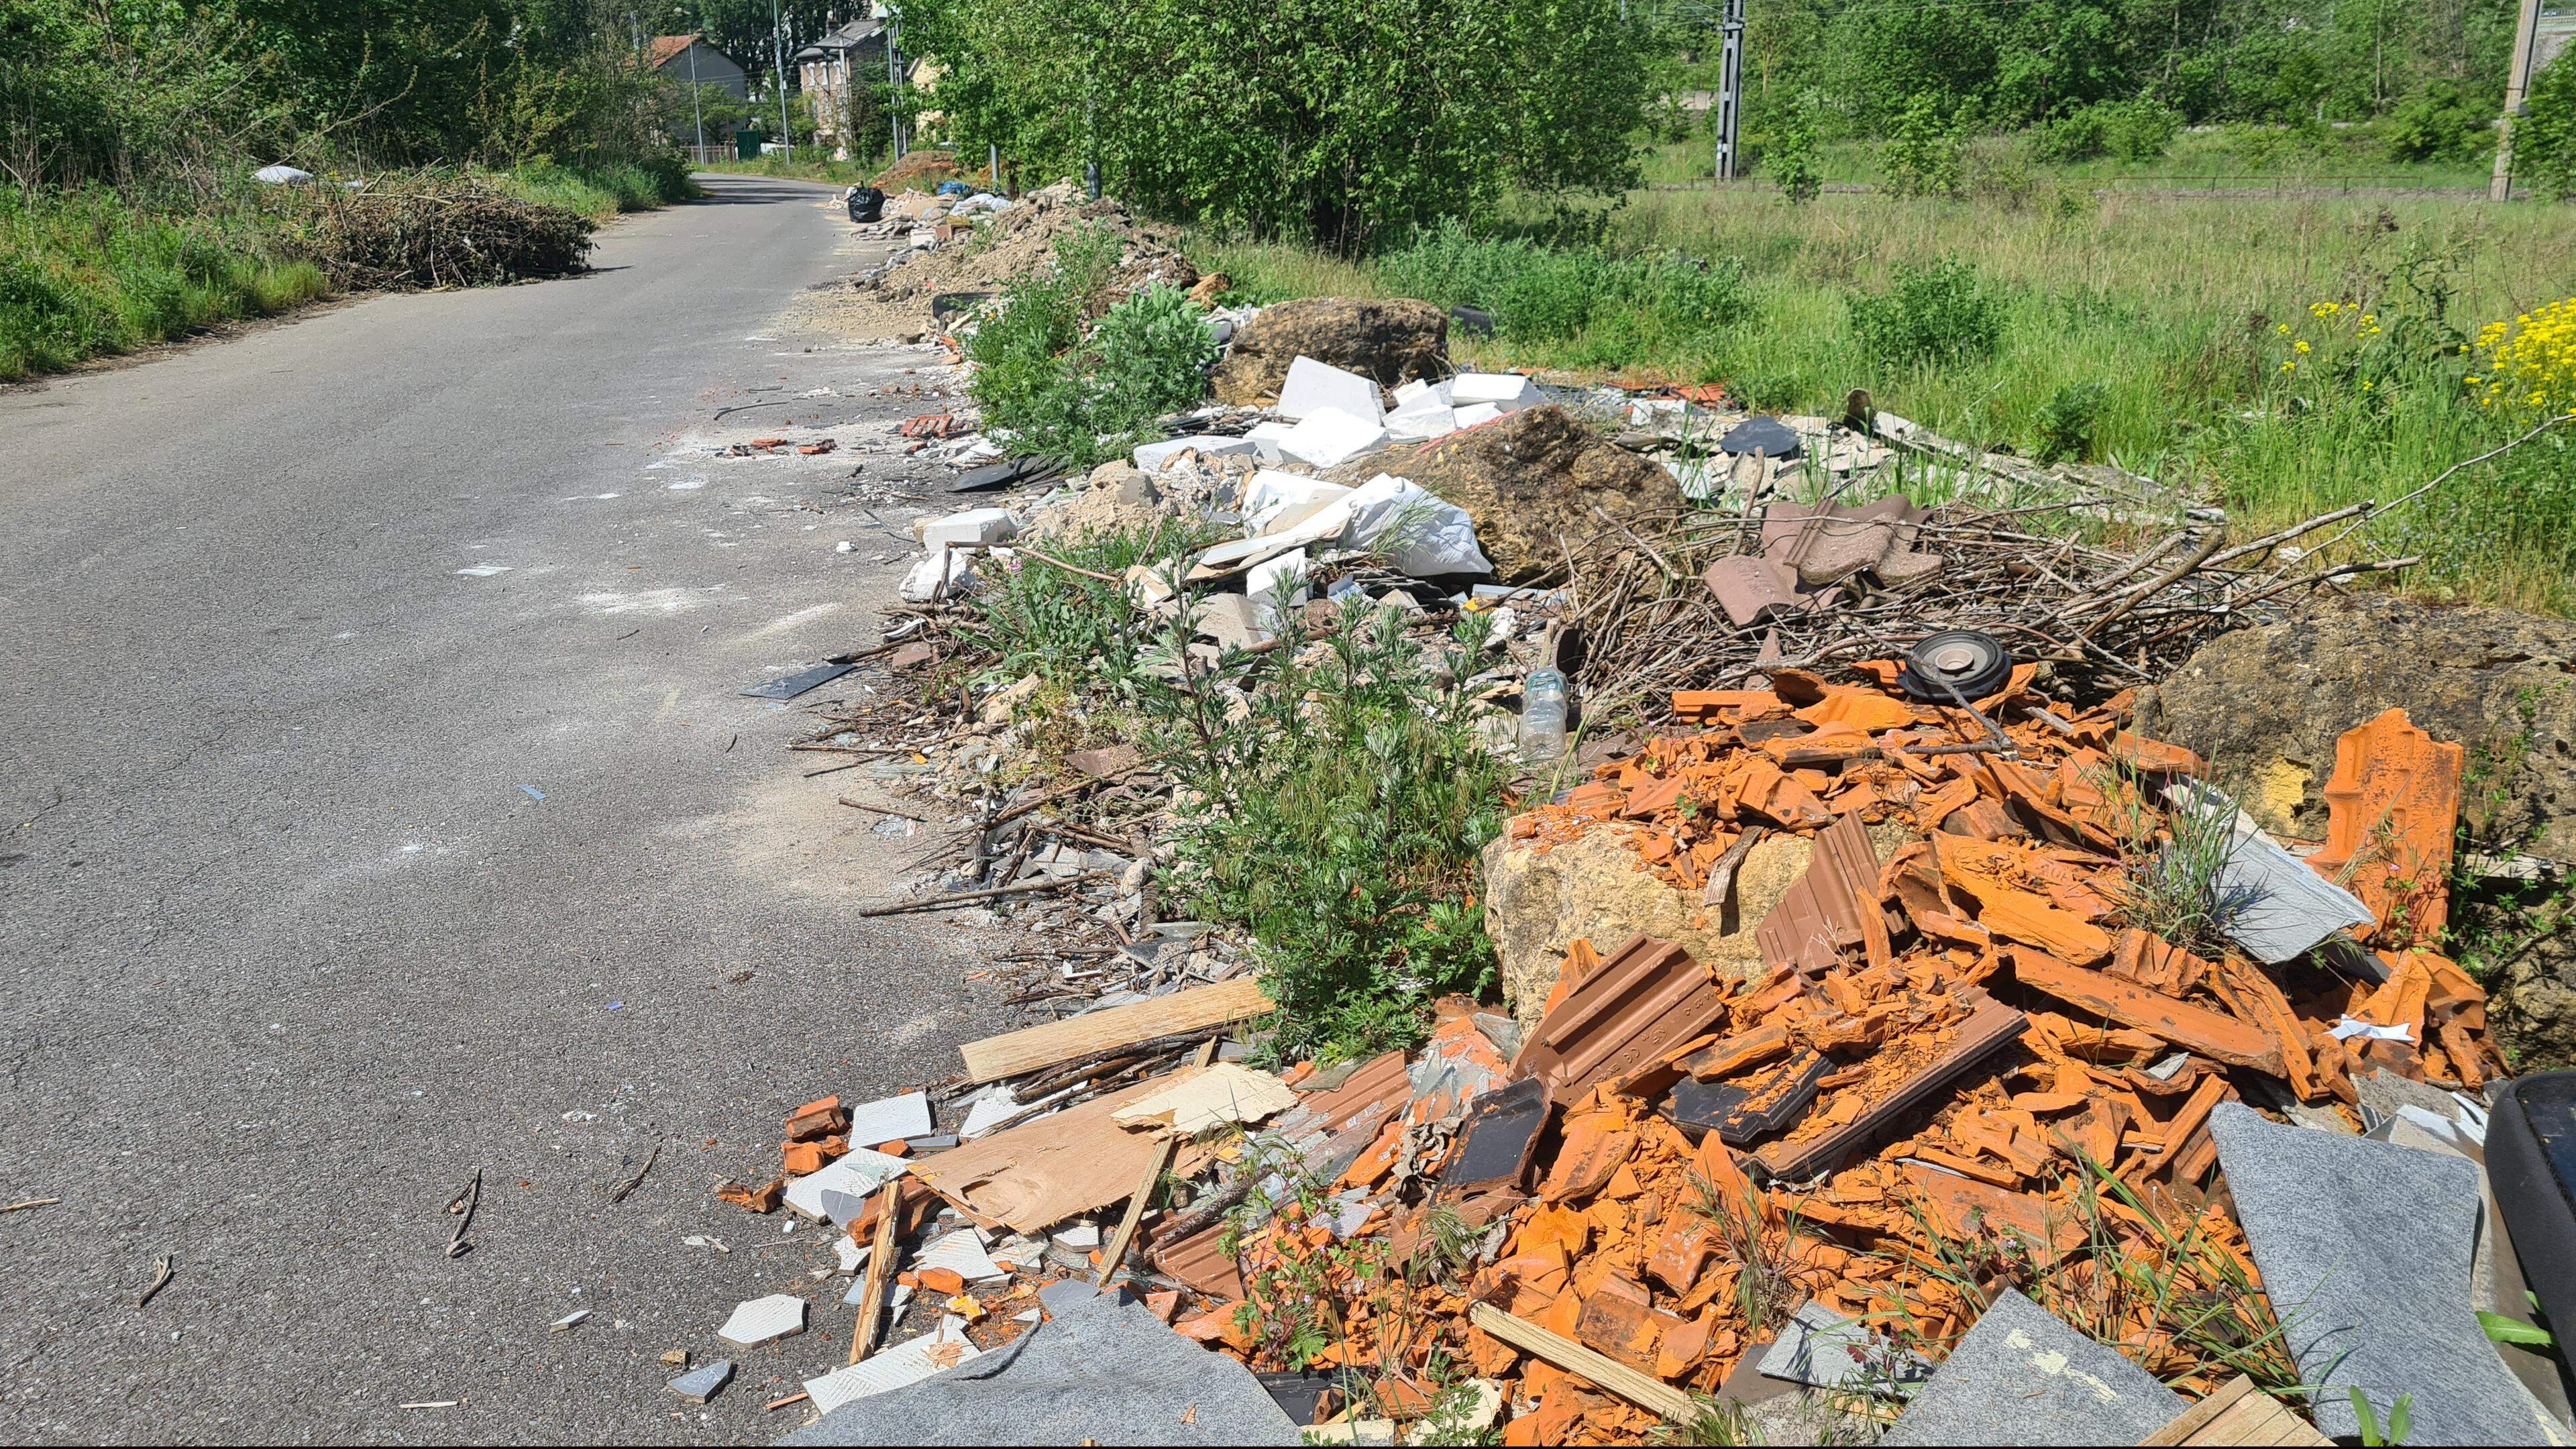 Le territoire de l’agglo de Longwy est confronté depuis plusieurs années maintenant au fléau des dépôts sauvages de déchets, transportés depuis le Luxembourg notamment.